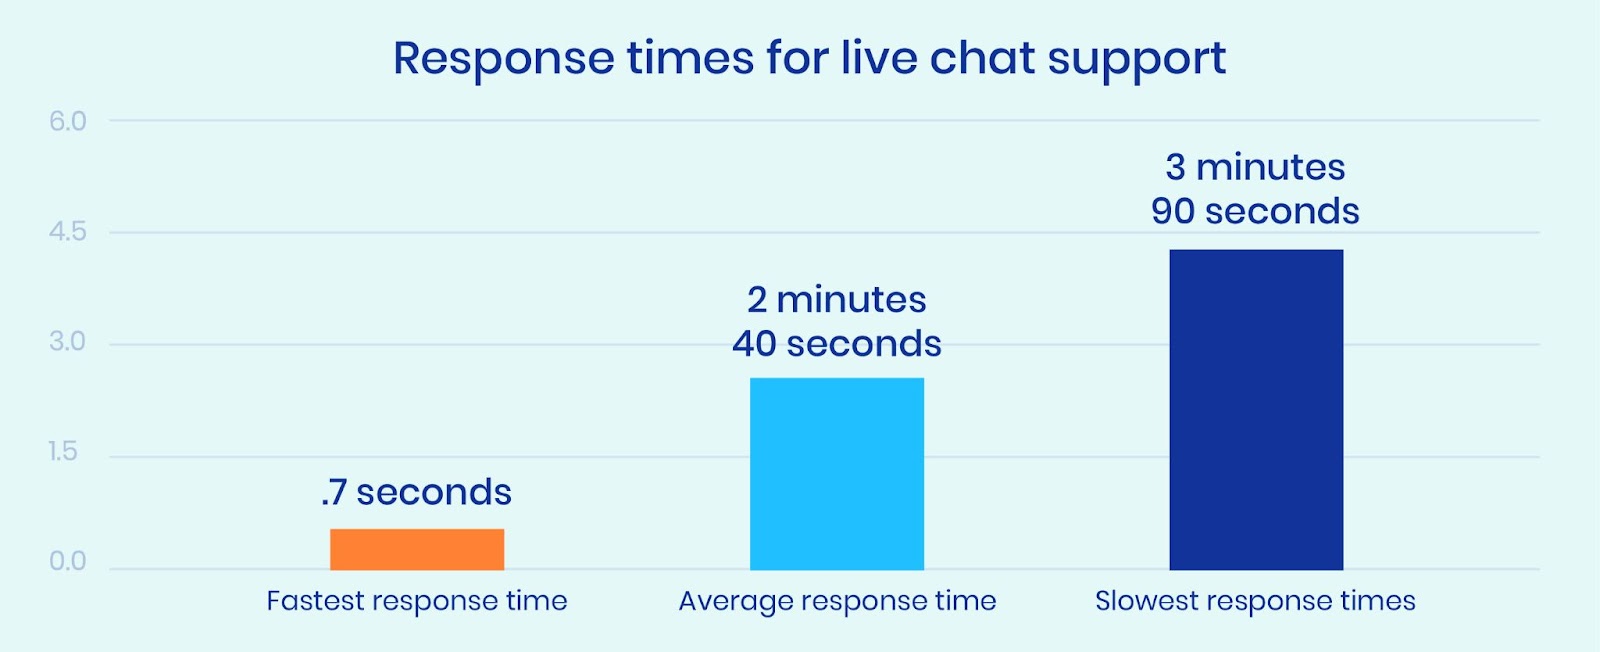 Tiempos de respuesta de la asistencia por chat en directo